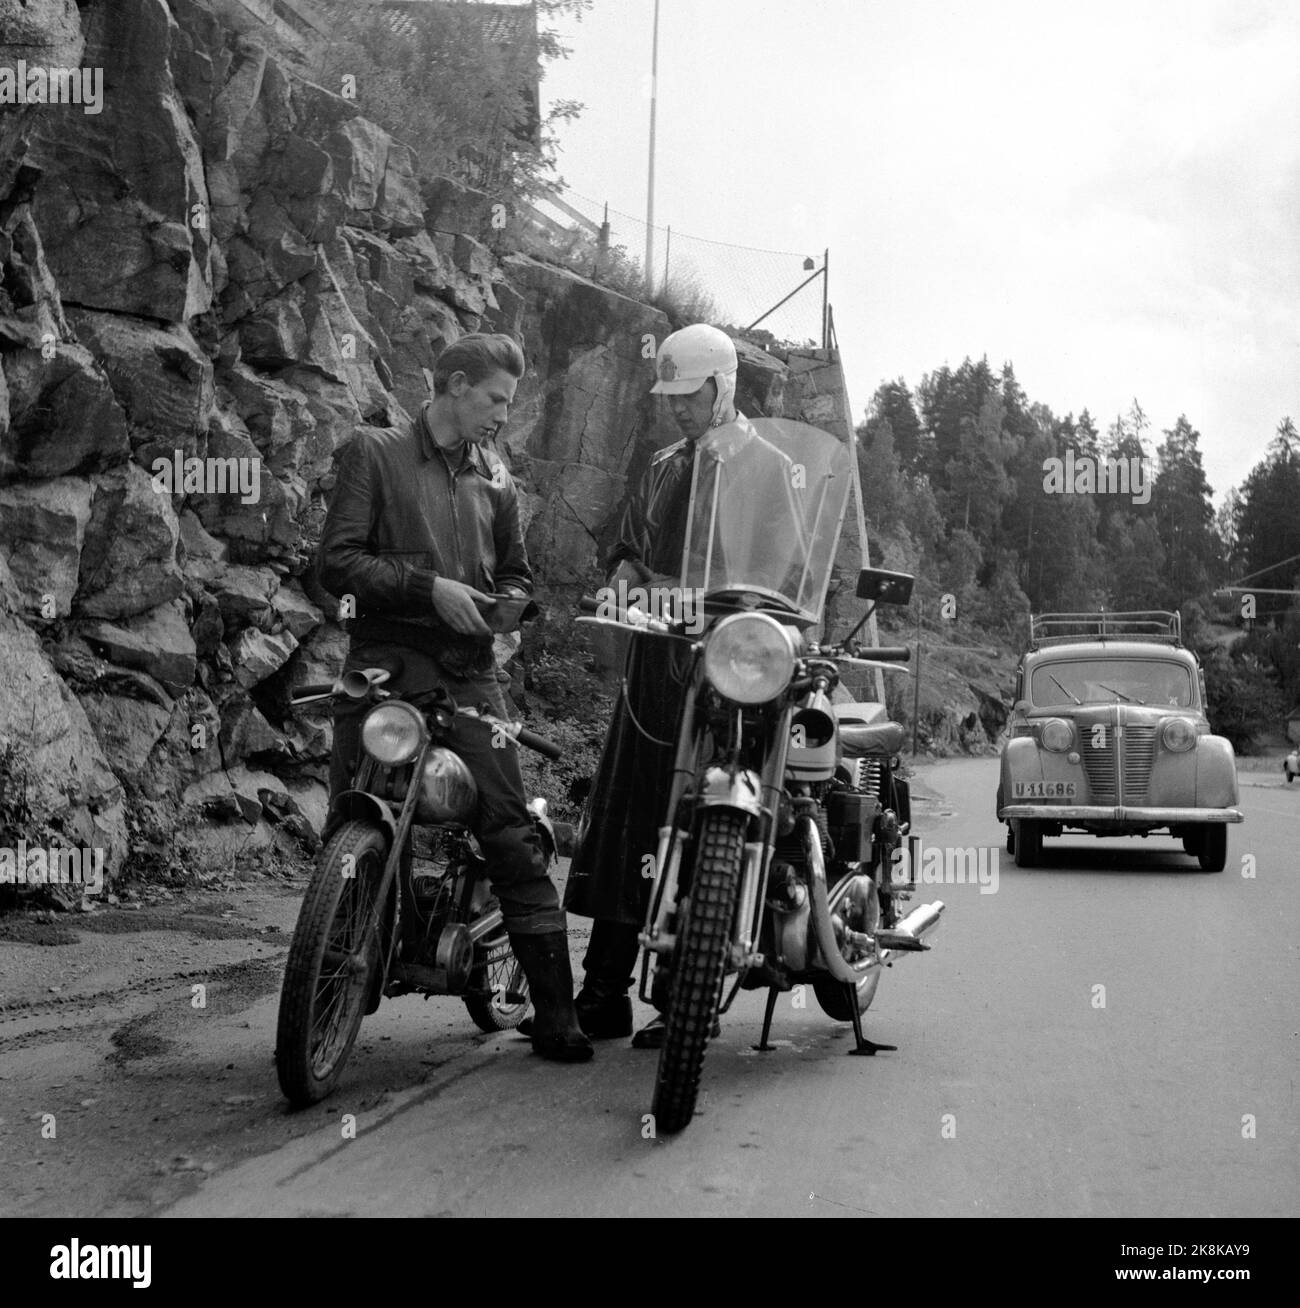 Oslo 19540729 das Justizministerium ordnet häufige Verkehrskontrollen an, um einen Rückgang der ständig steigenden Zahl von Unfällen auf den Straßen zu gewährleisten. Hier hält eine Verkehrskontrolle, ein Motorrad-Verkehrskapel, einen Motorradfahrer an. Foto: NTB / NTB Stockfoto